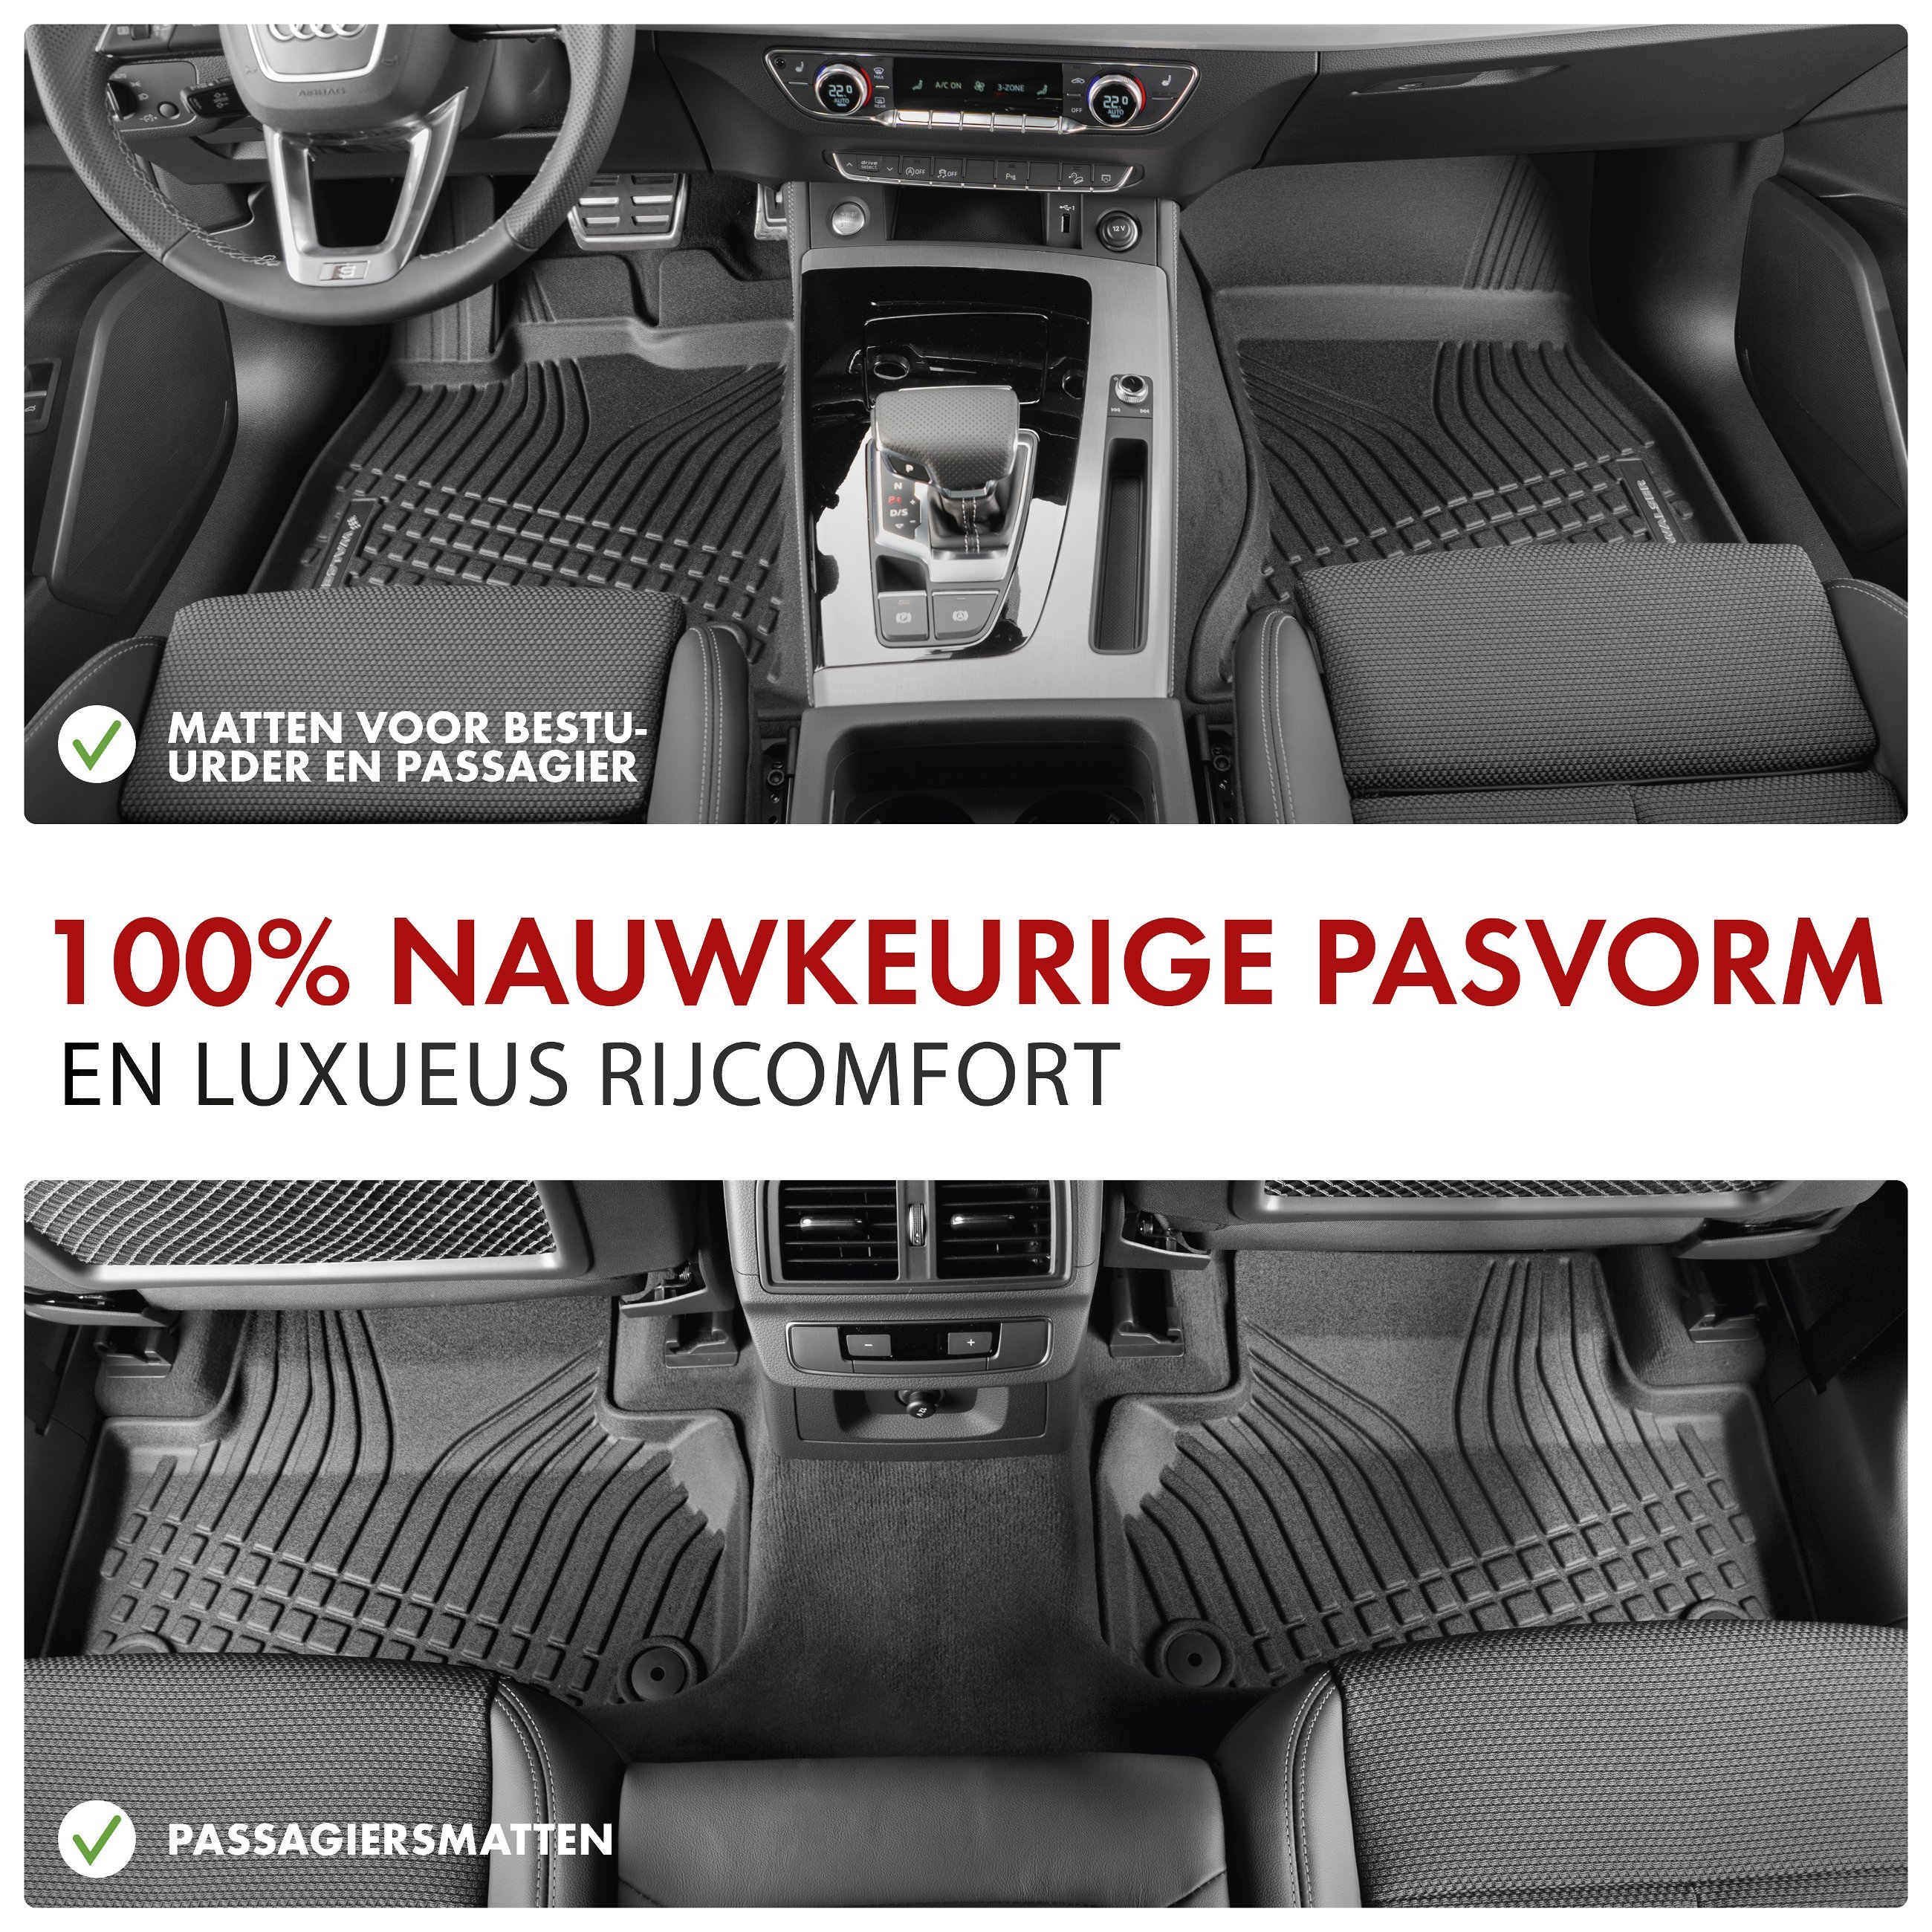 Premium rubberen matten Roadmaster voor Seat Alhambra (710, 711) 06/2010-2022, VW Sharan (7N1, 7N2) 05/2010-2022